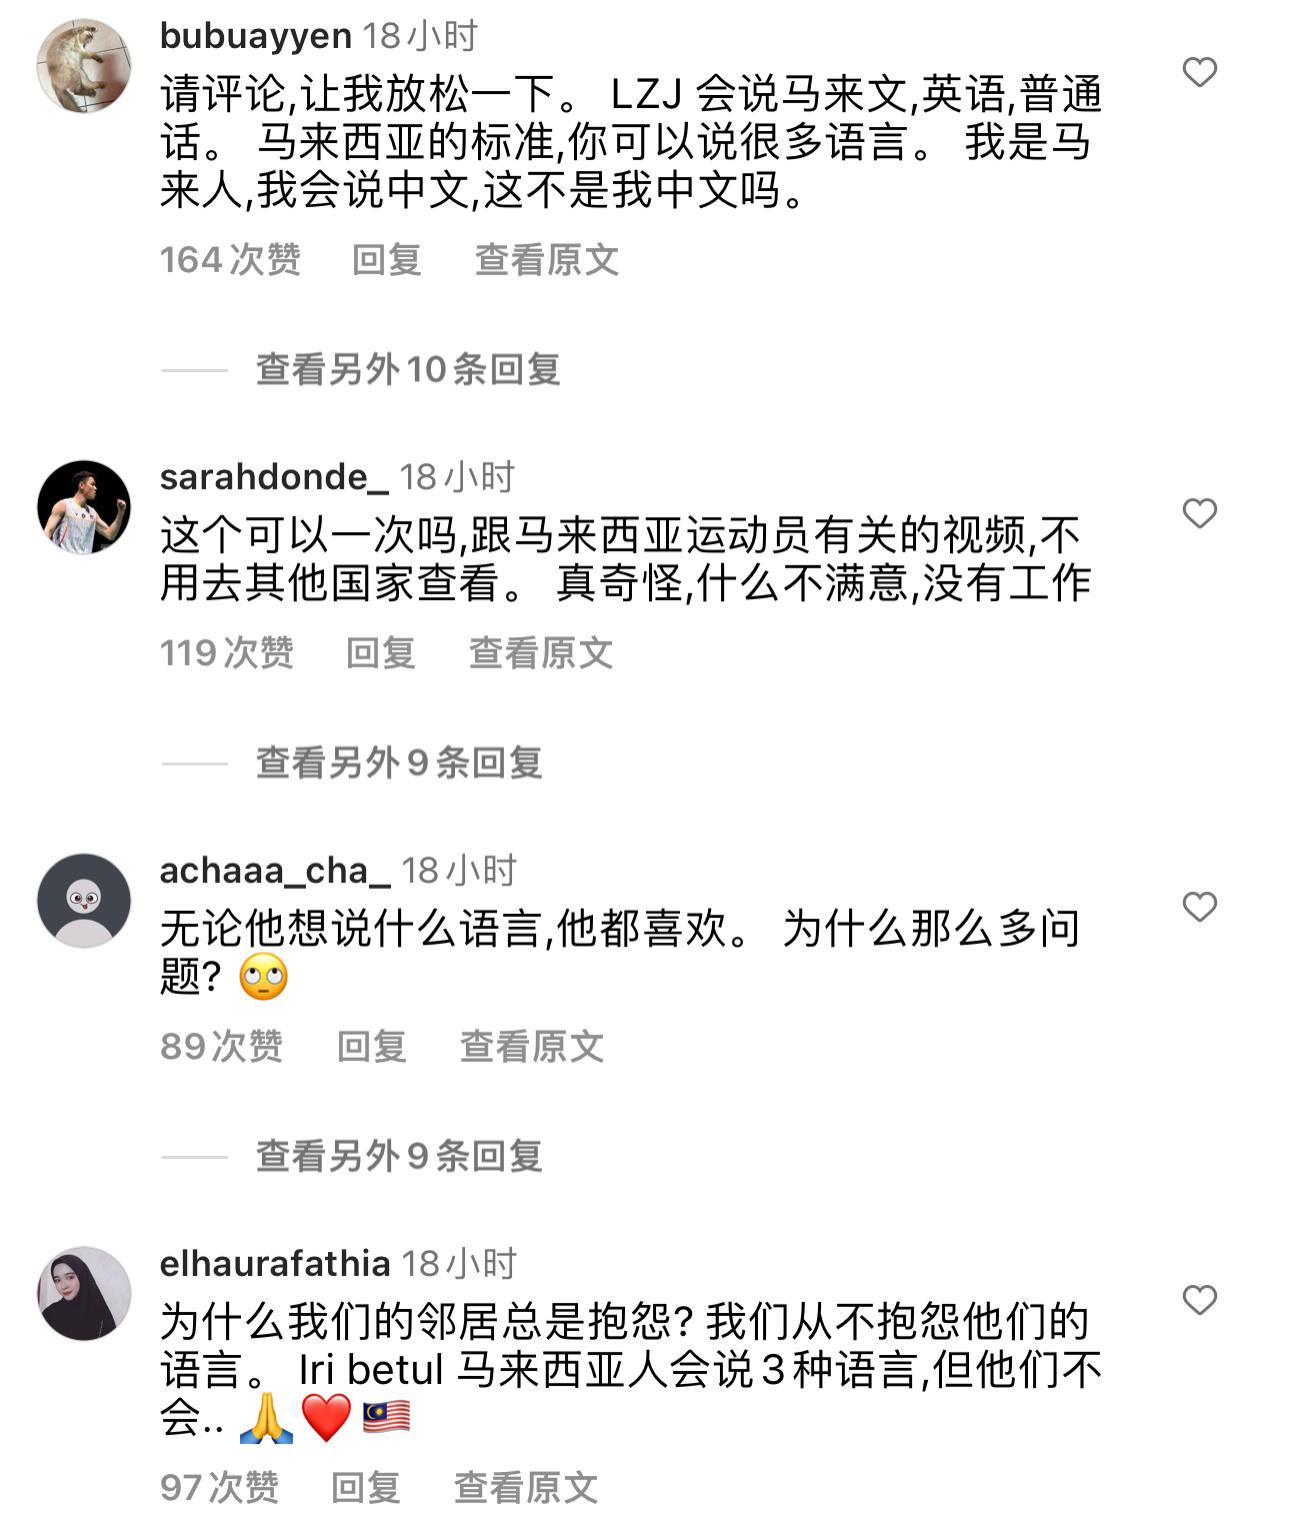 昨天bwf发了一个李梓嘉的视频，就因为李梓嘉讲的是中文，导致印尼球迷和大马球迷在(3)